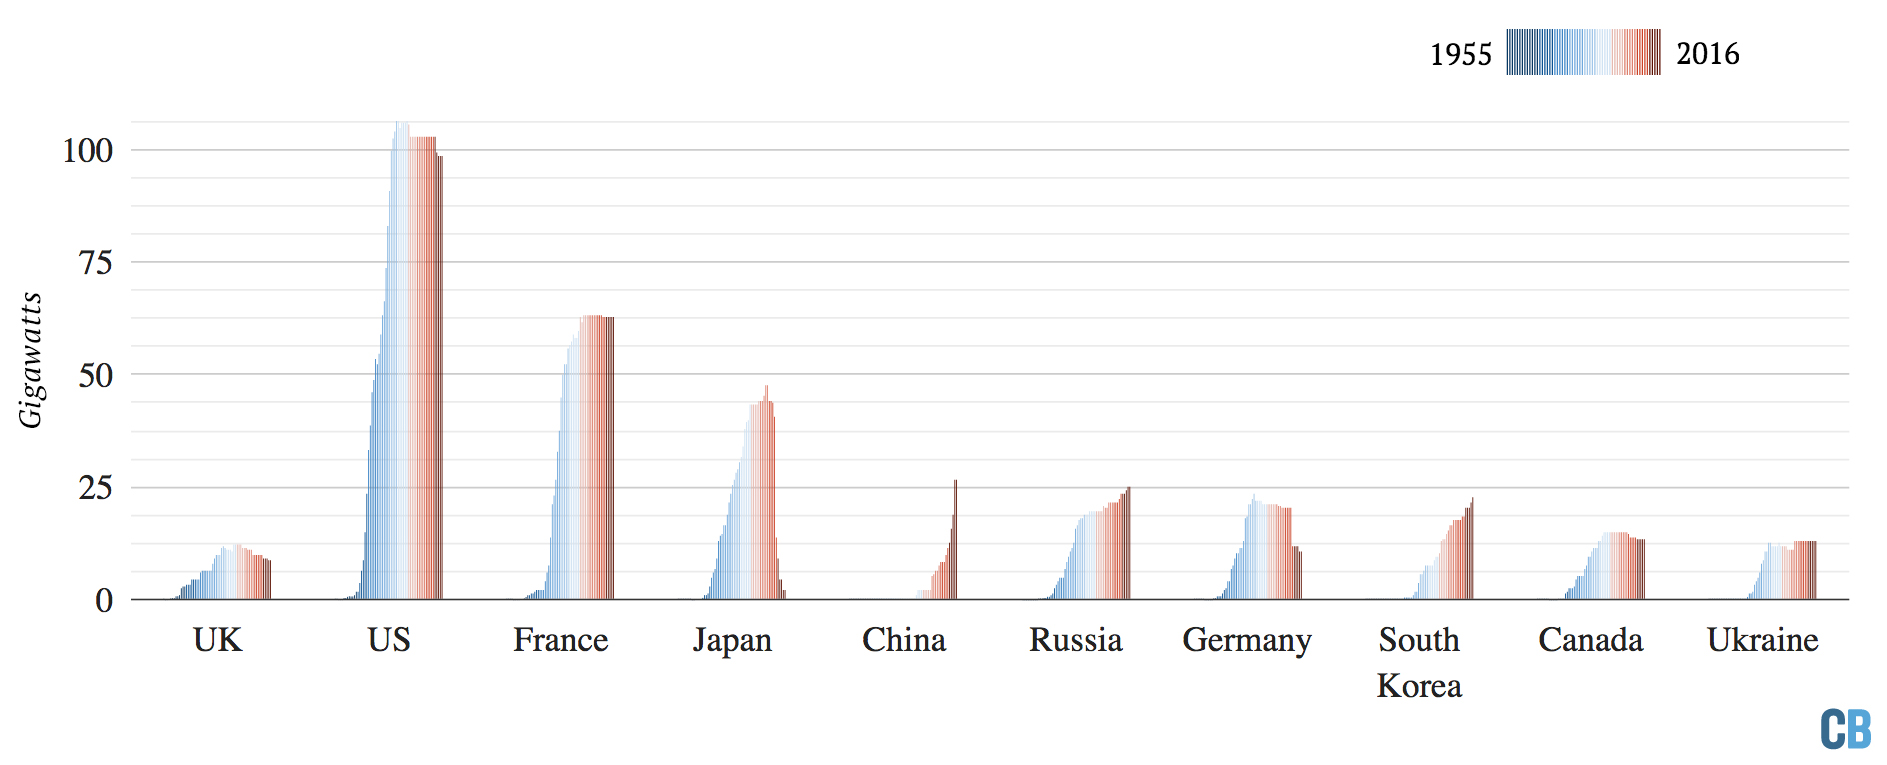 累积核电能力操作前10个国家在1955年和2016年之间